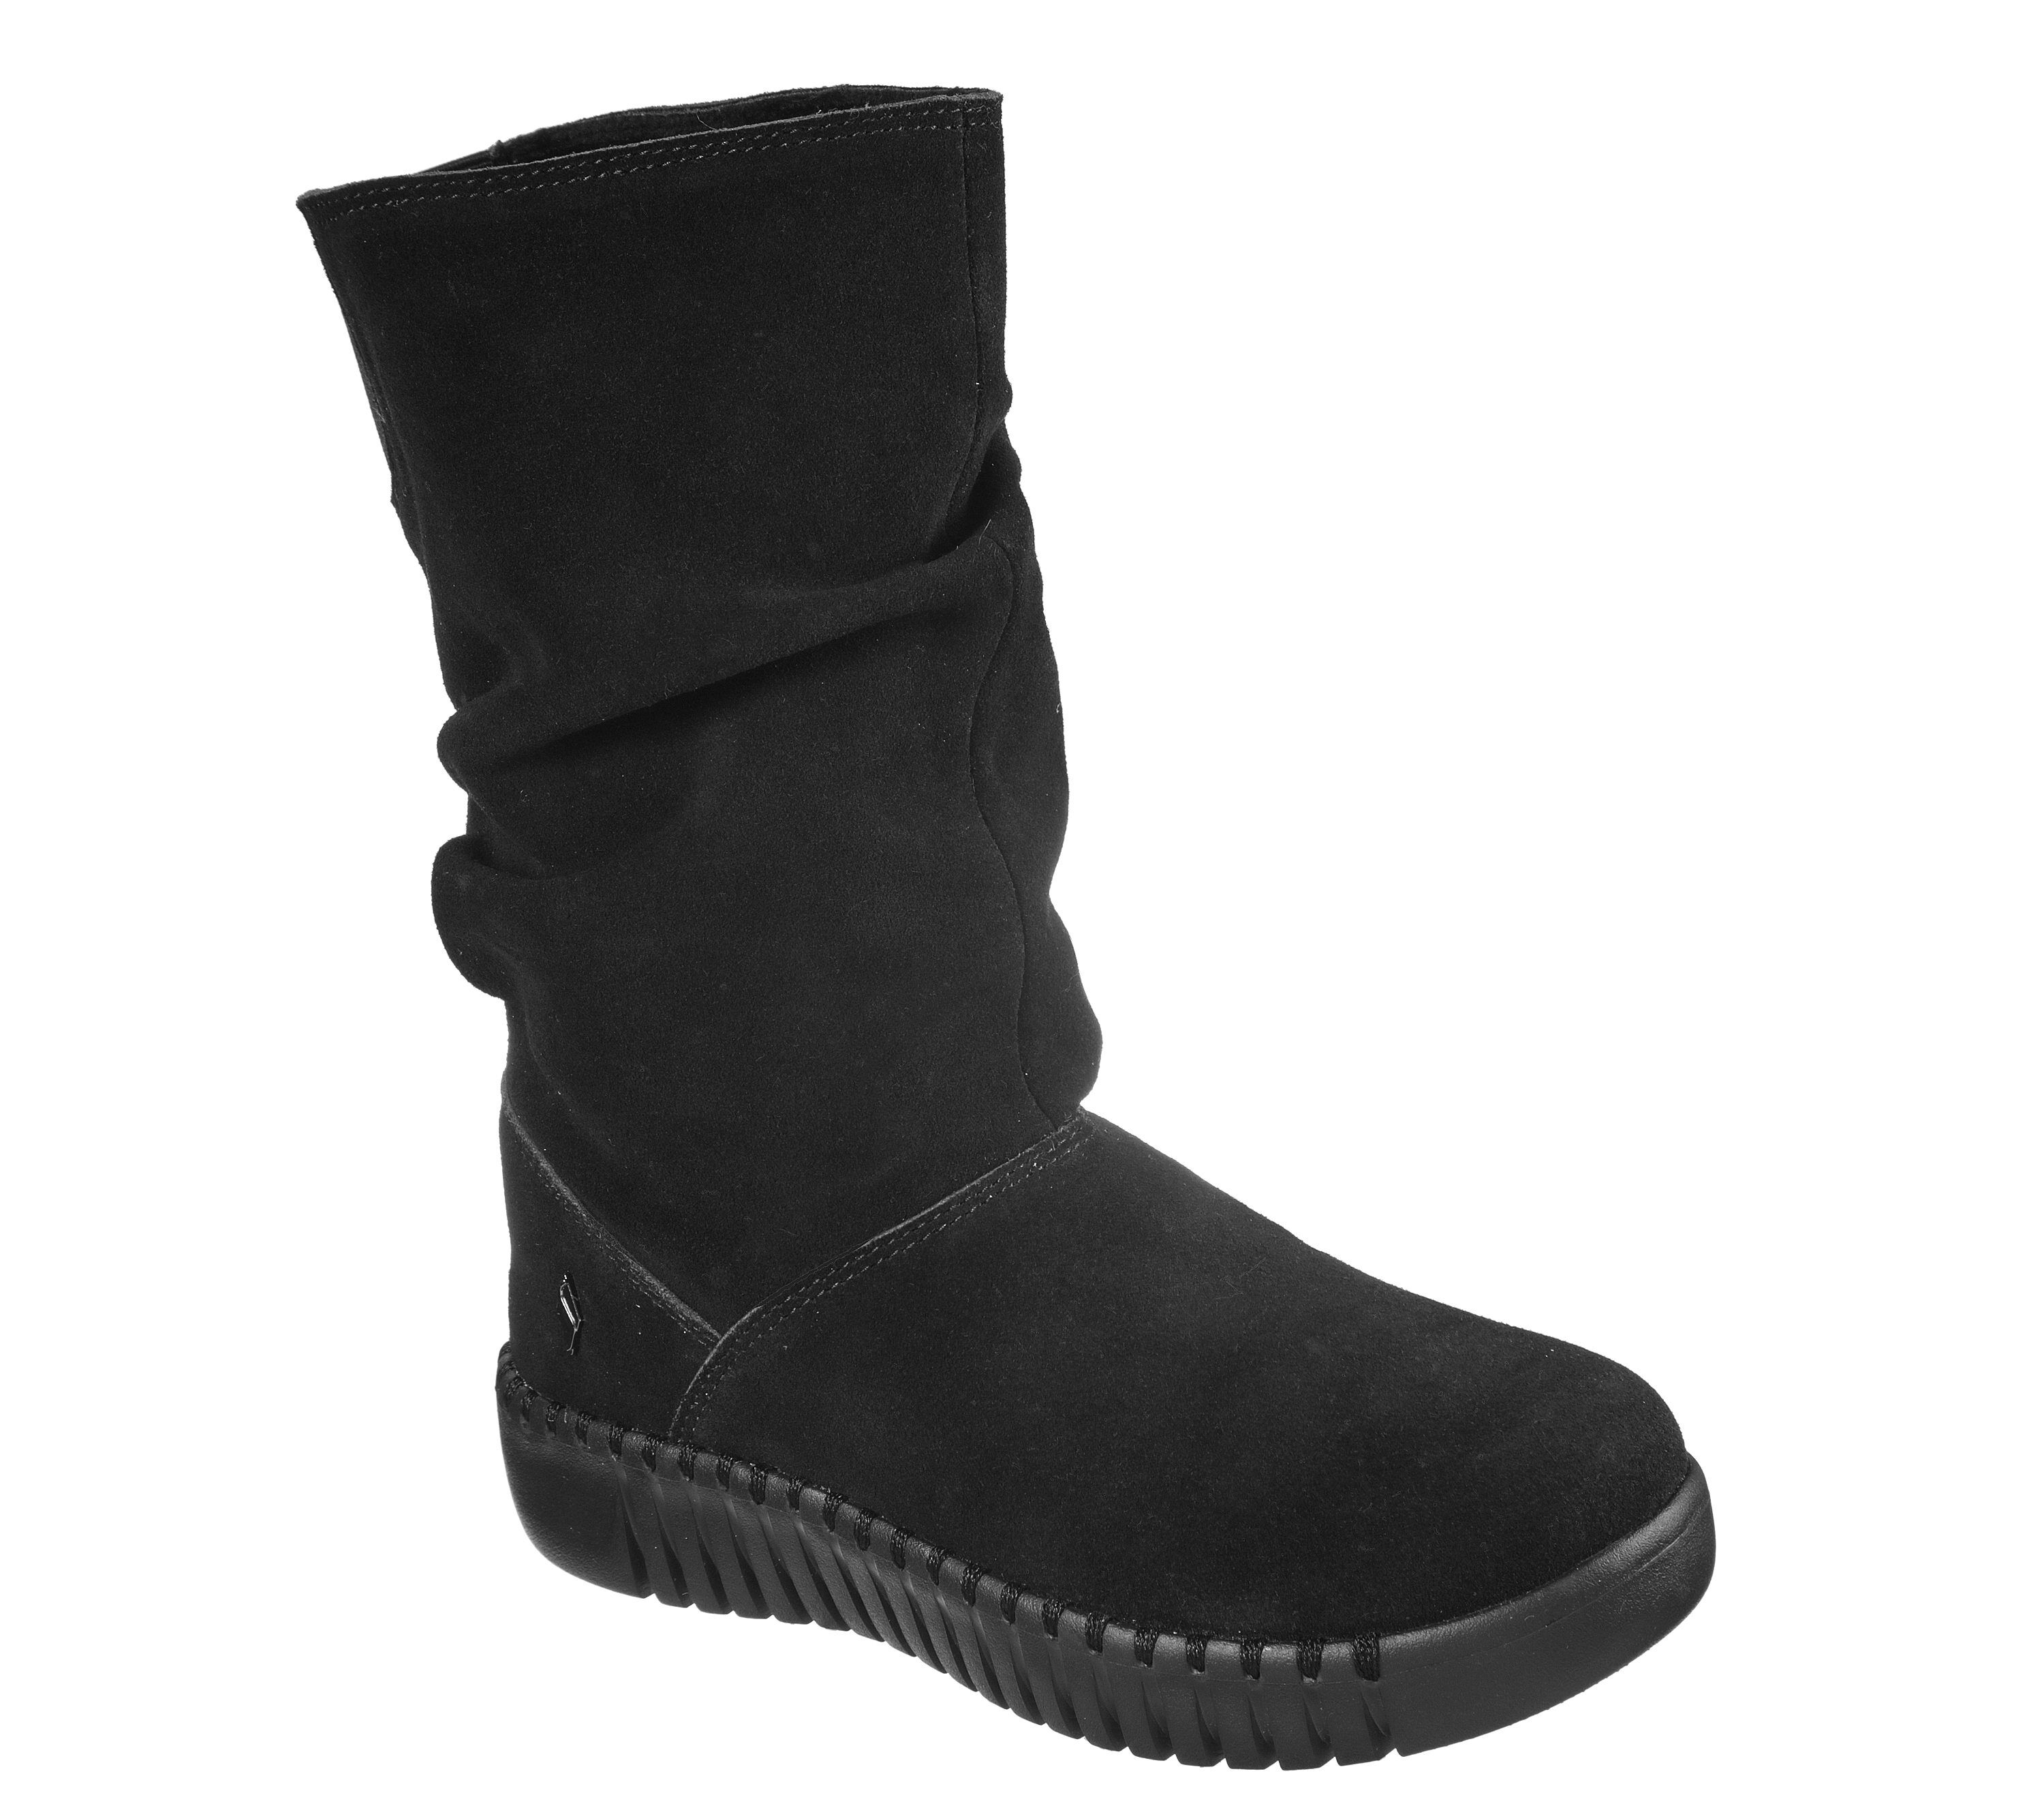 skechers dark grey suede calf length boots